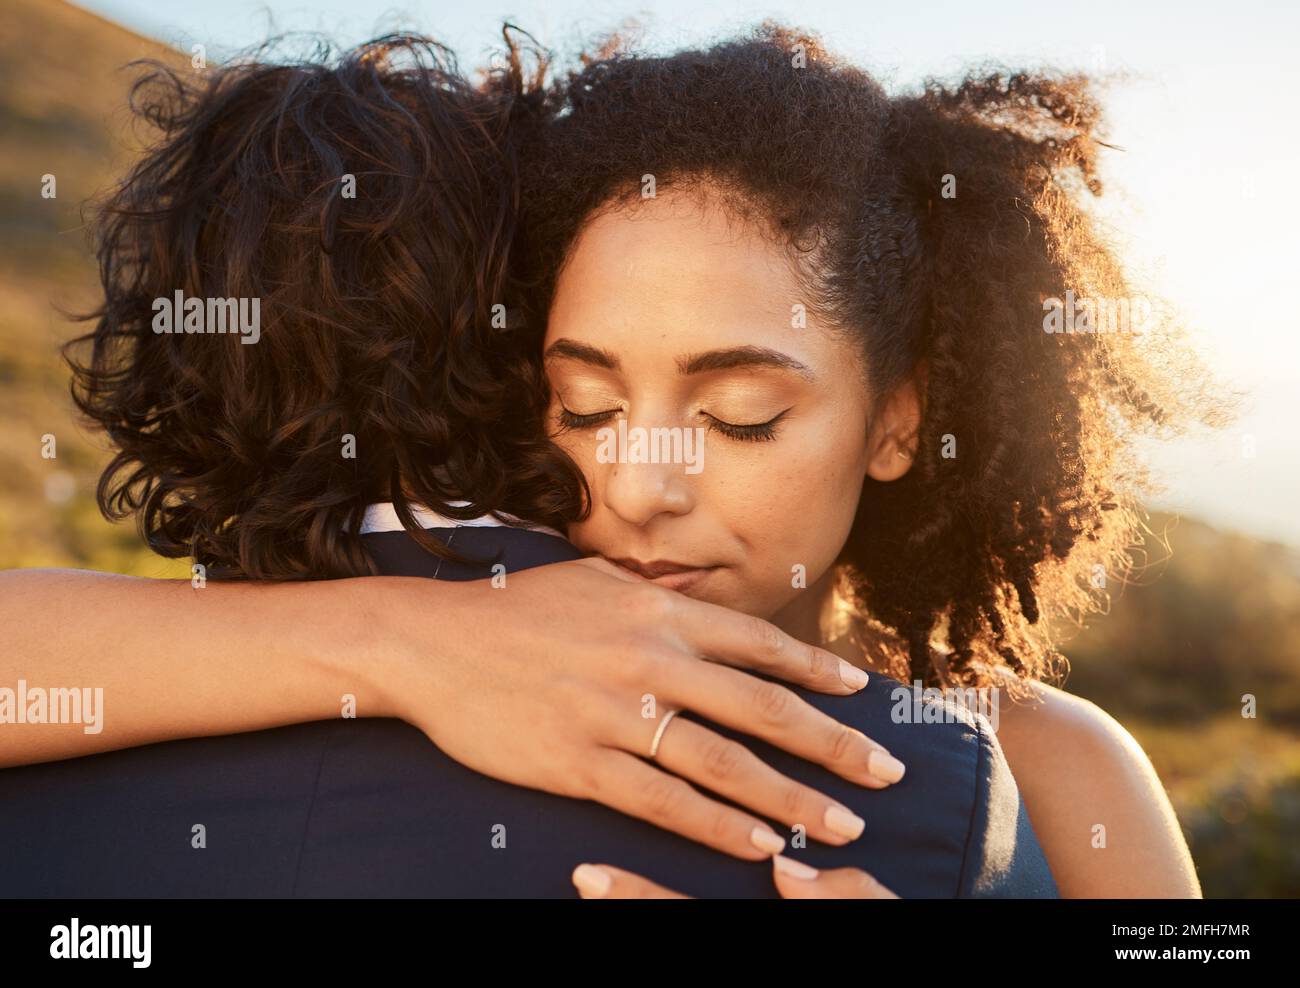 Hochzeit, schwarze Frau und Mann umarmen sich bei Sonnenuntergang, um sich um ihr Eheleben zu kümmern. Romantik, Engagement und Heirat junger Menschen Stockfoto